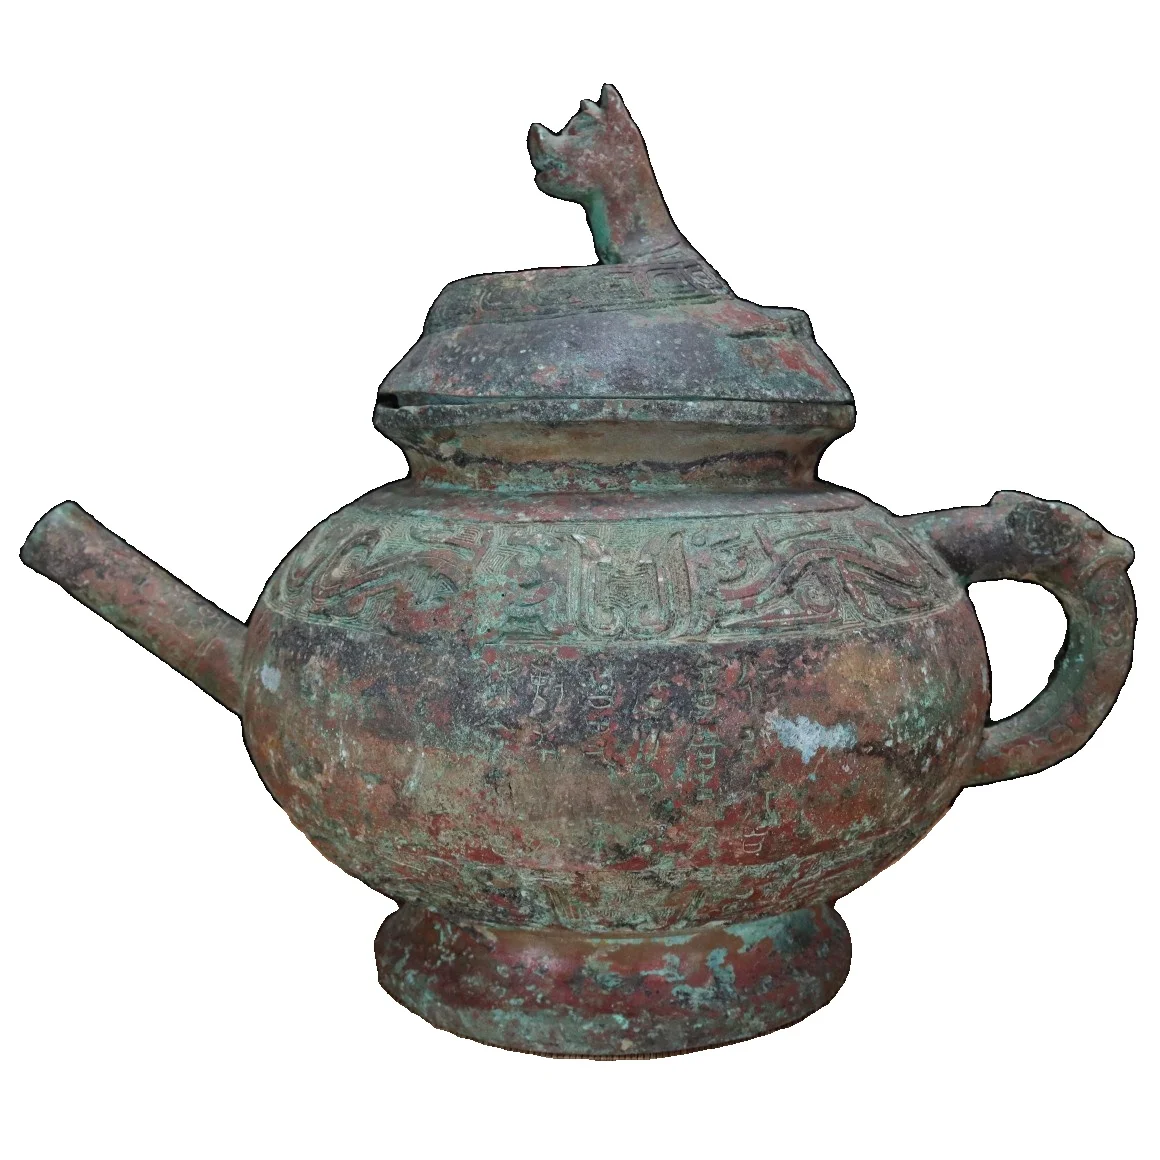 

LaoJunLu, бронзовый горшок Panlong He в западном стиле Чжоу, имитация античной бронзы, коллекция шедевров китайского солдатика